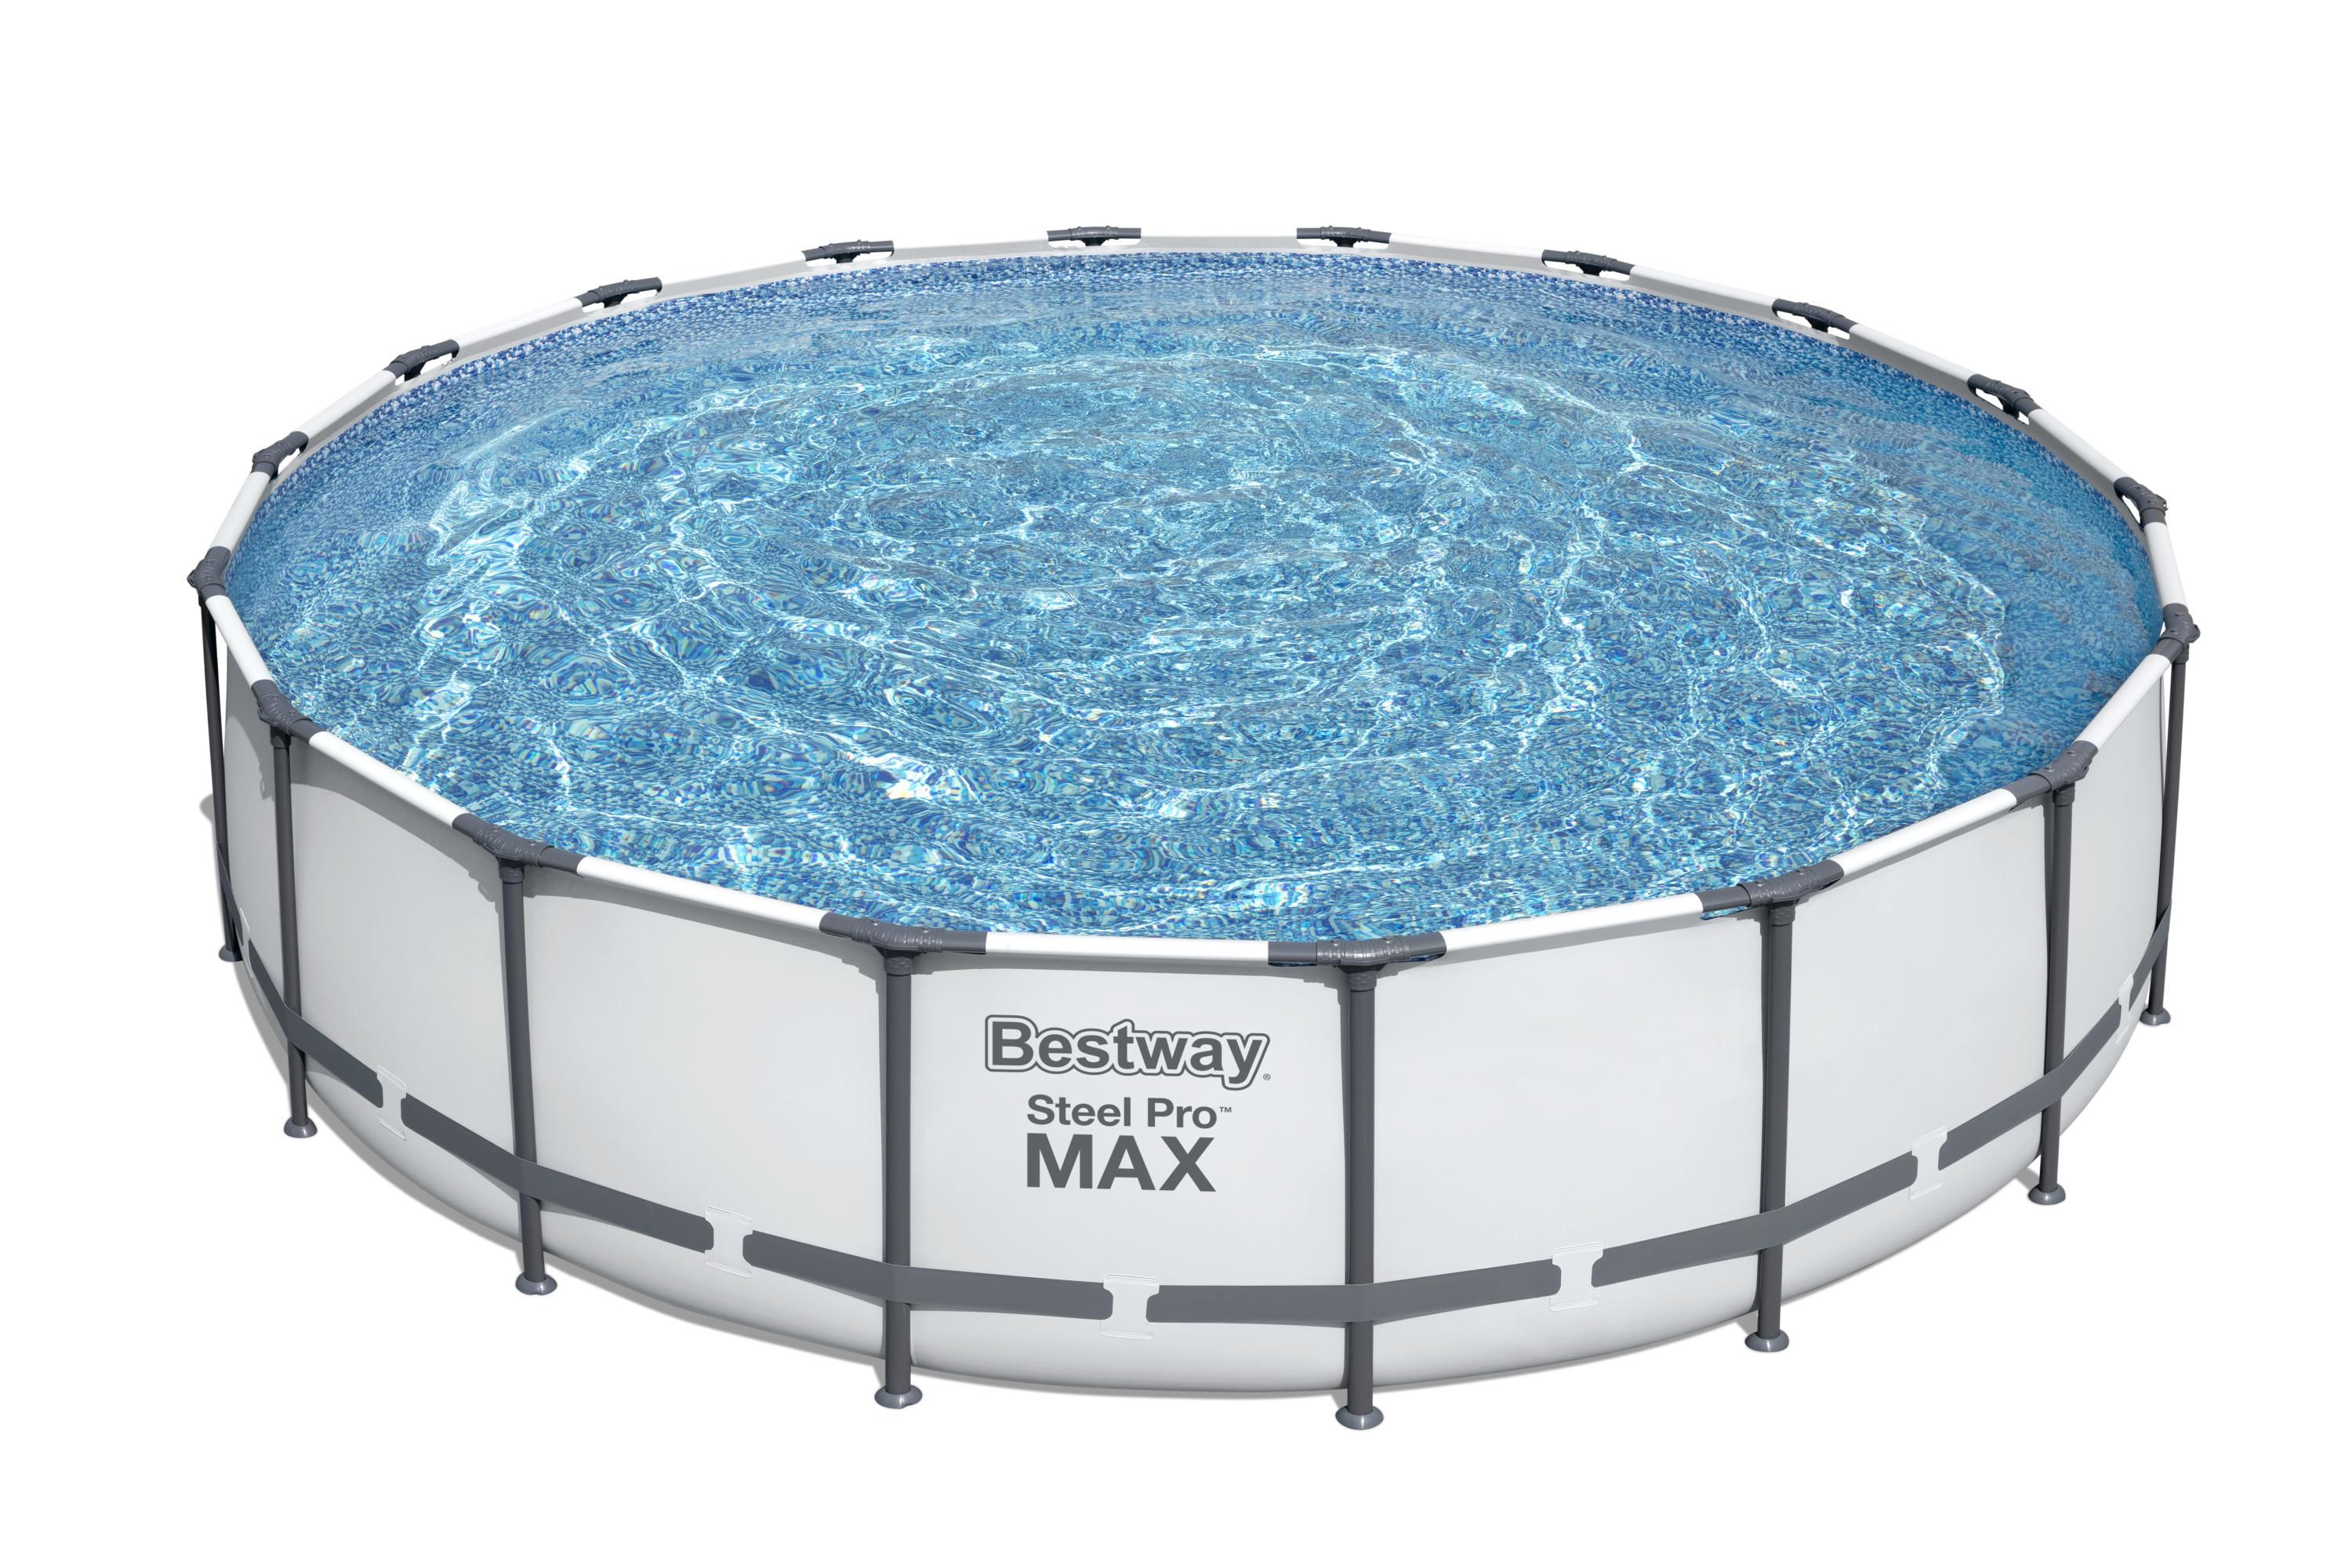 Bestway Steel pro max PVC Pool (W) 5.49m x (L) 5.49m